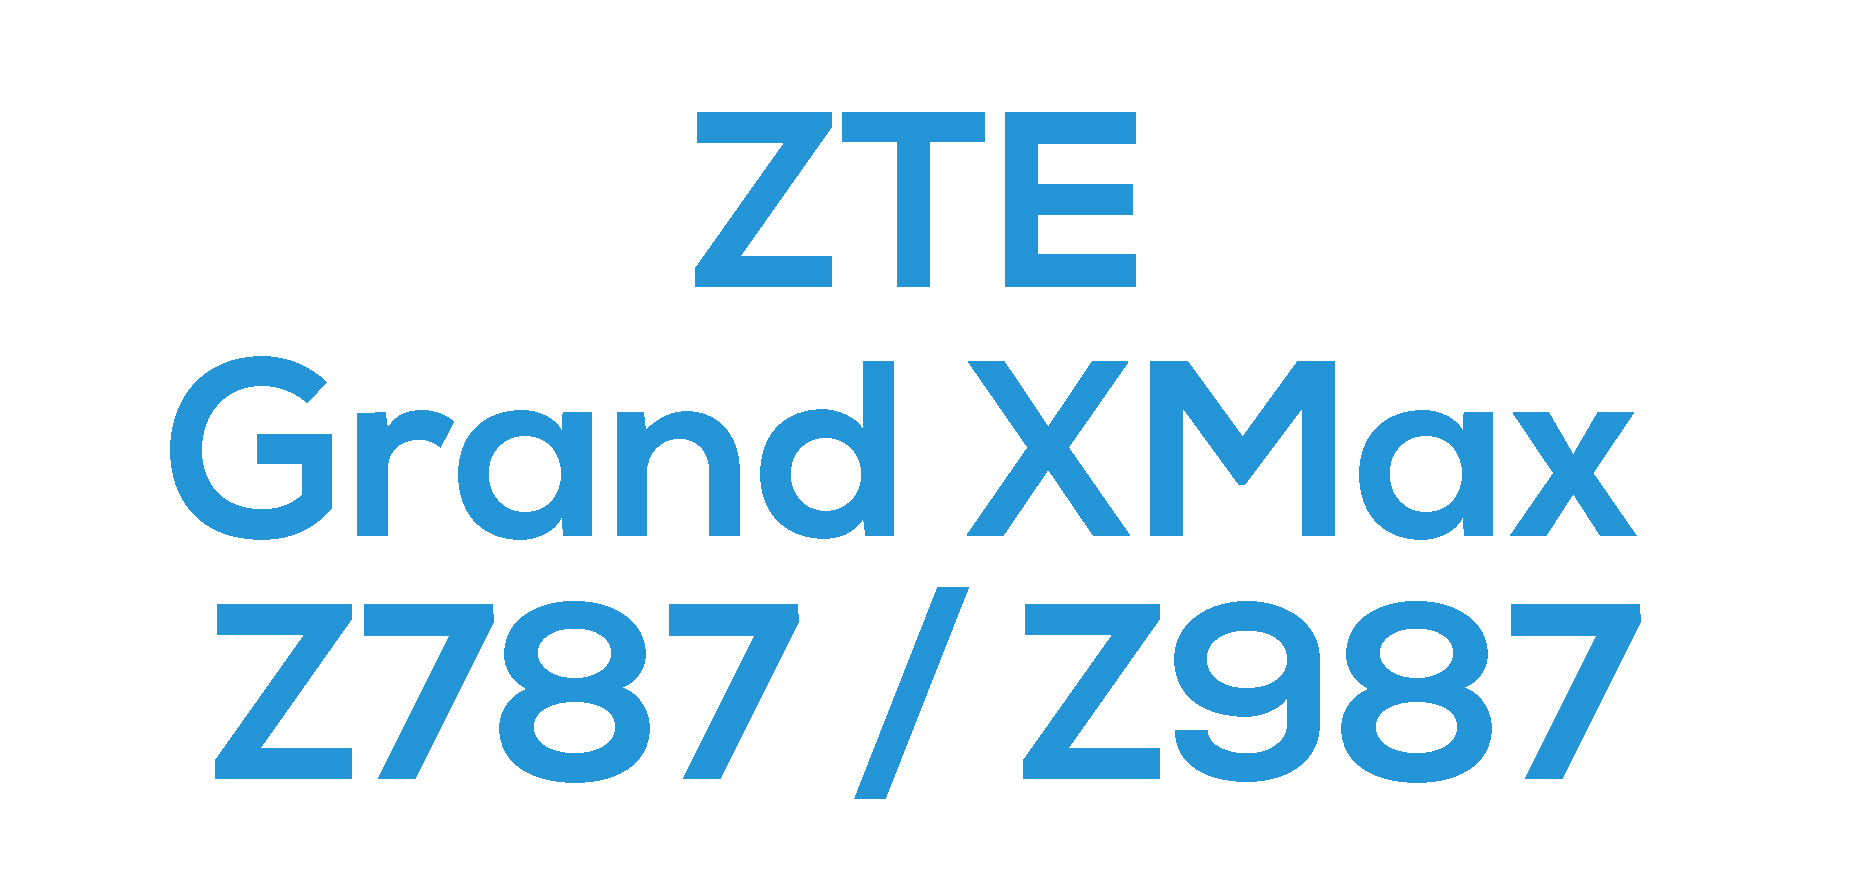 ZTE Grand X Max (Z787 / Z987)